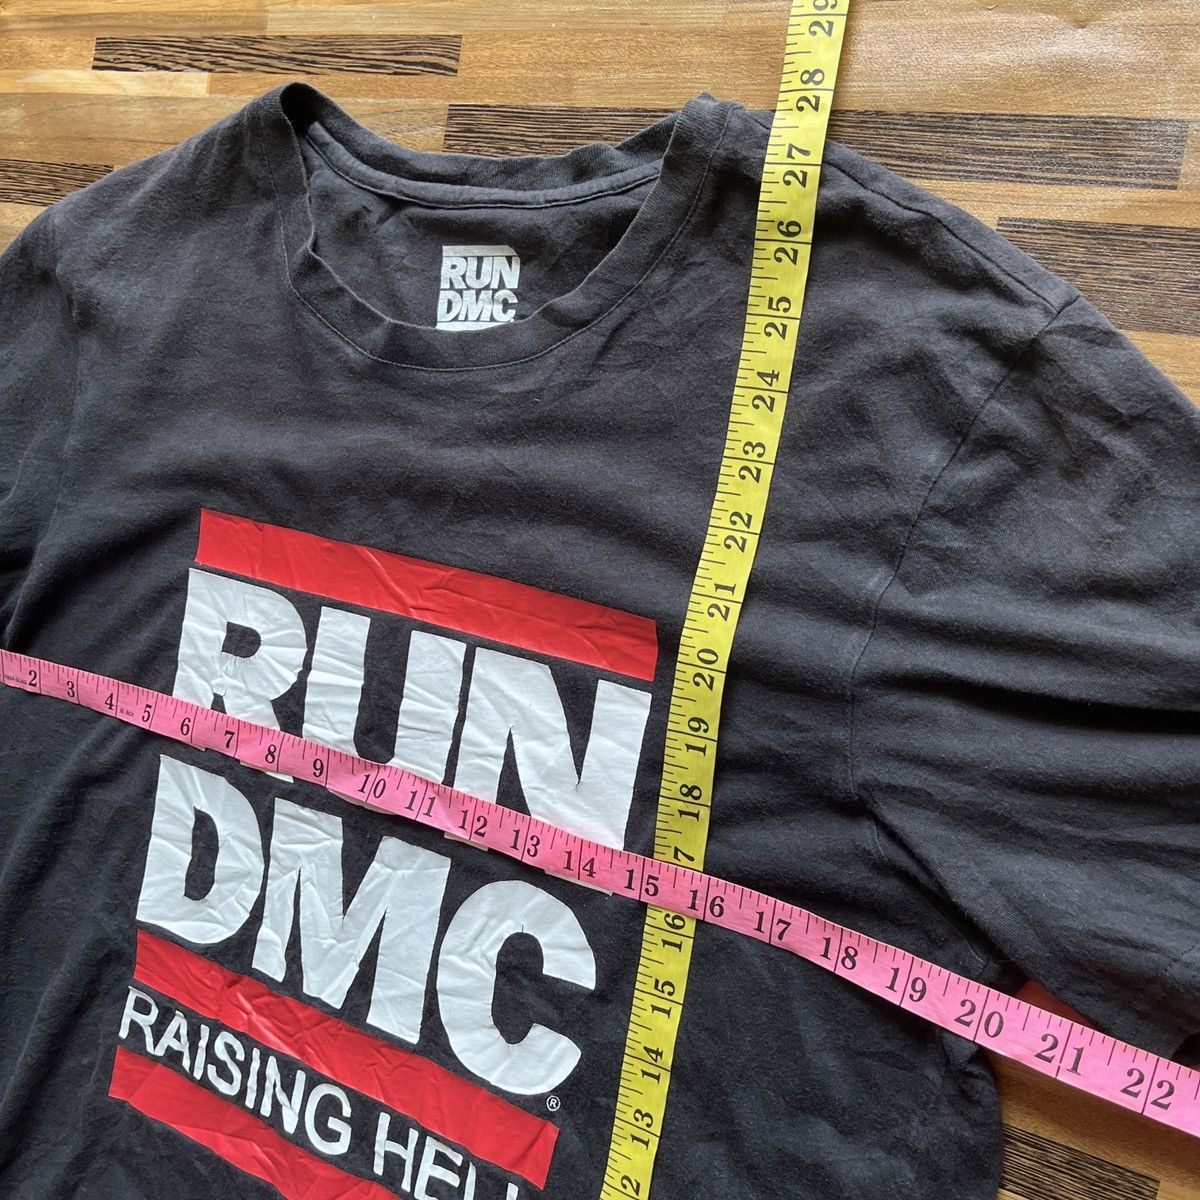 RUN DMC Raising Hell Rap Tees Black Copyright 2015 - 3